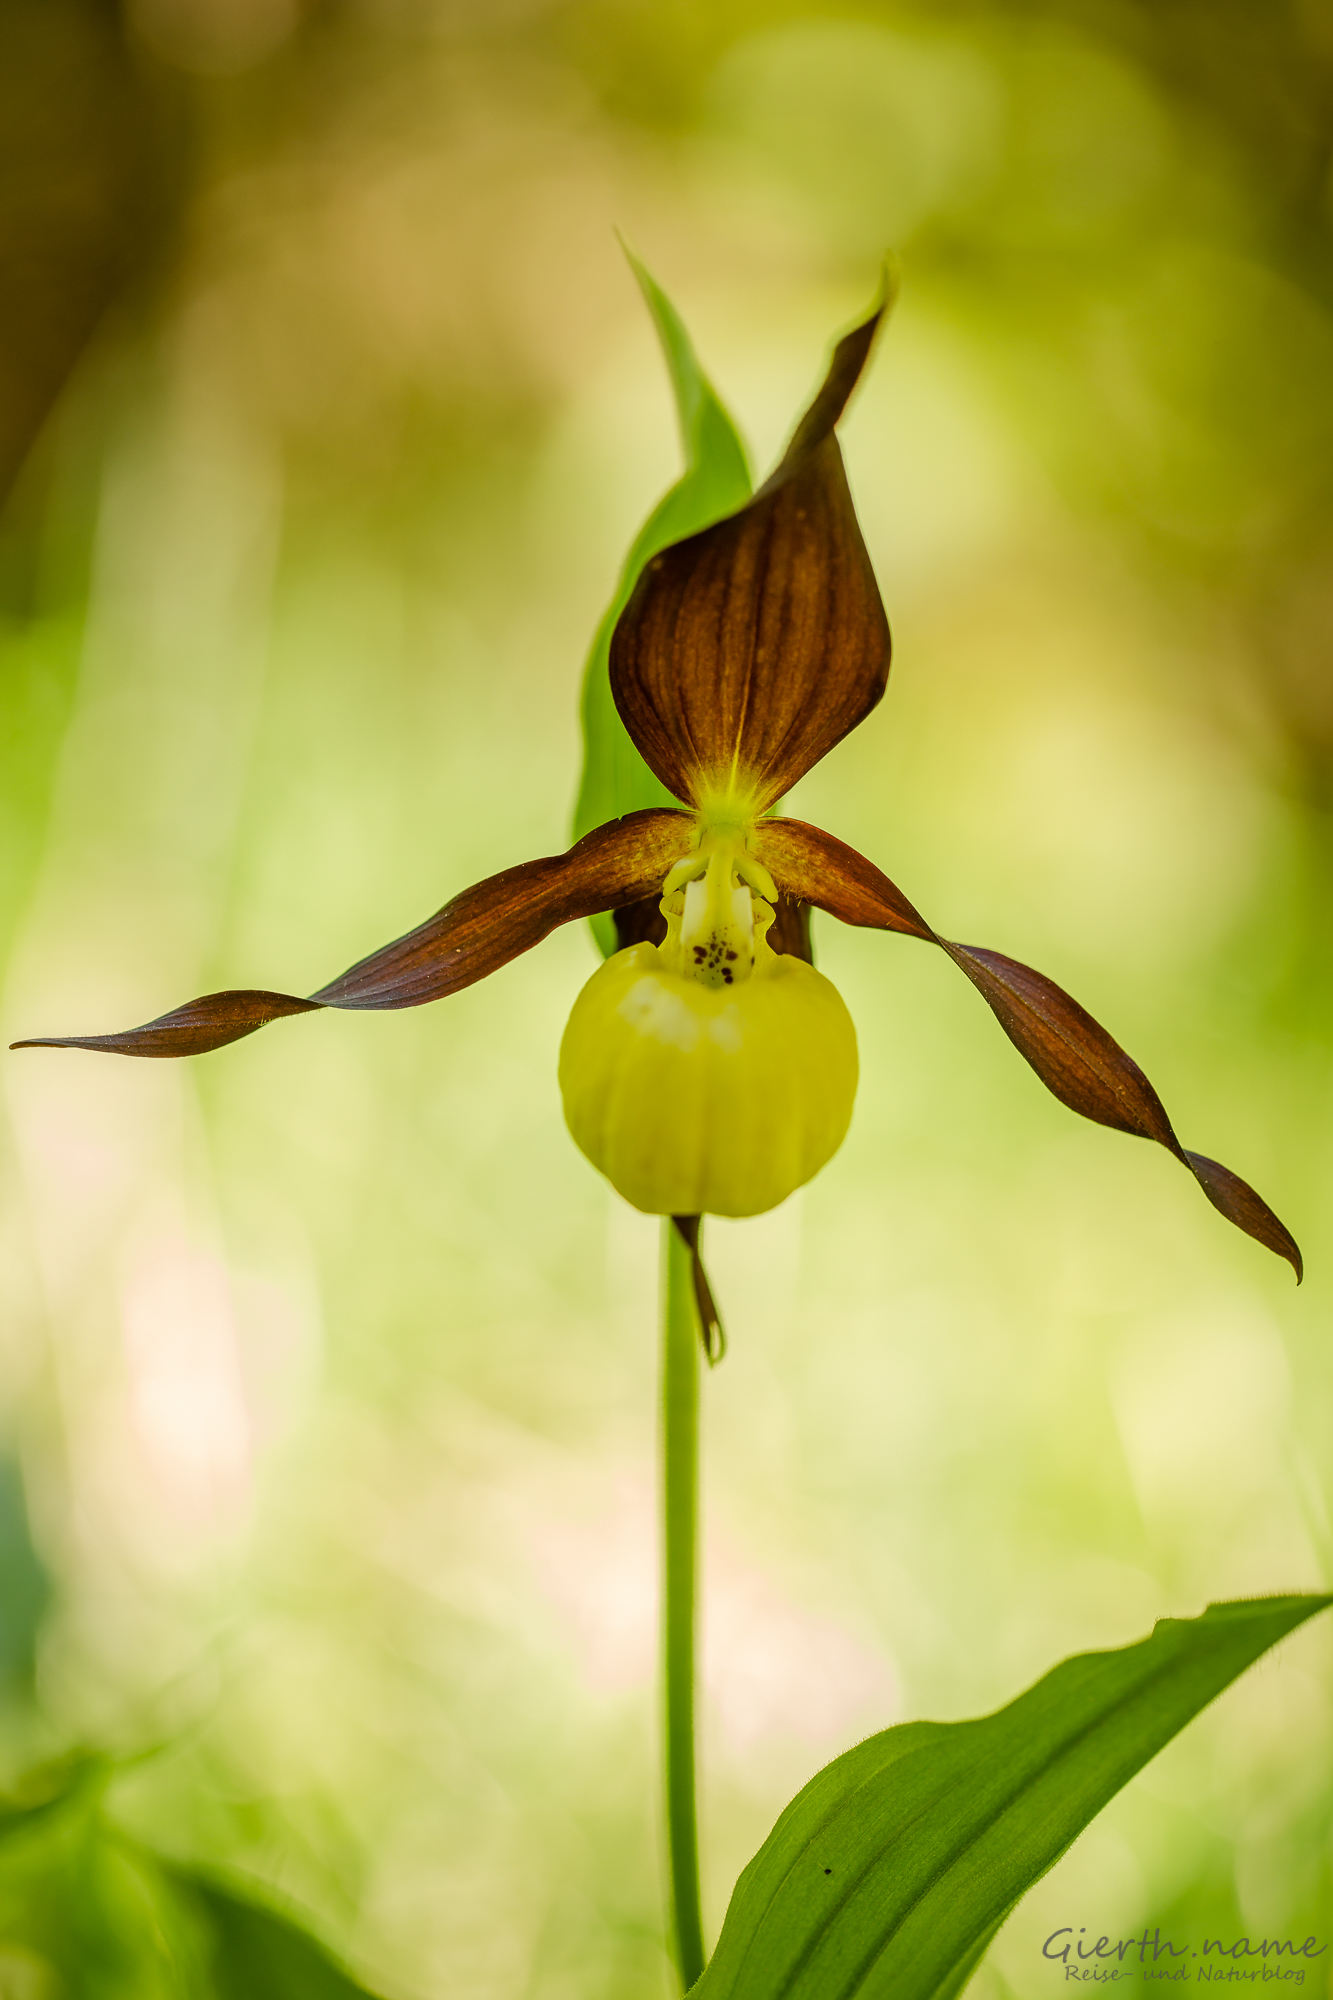 Zu Besuch bei derKönigin der einheimischen Orchideen – dem gelben Frauenschuh